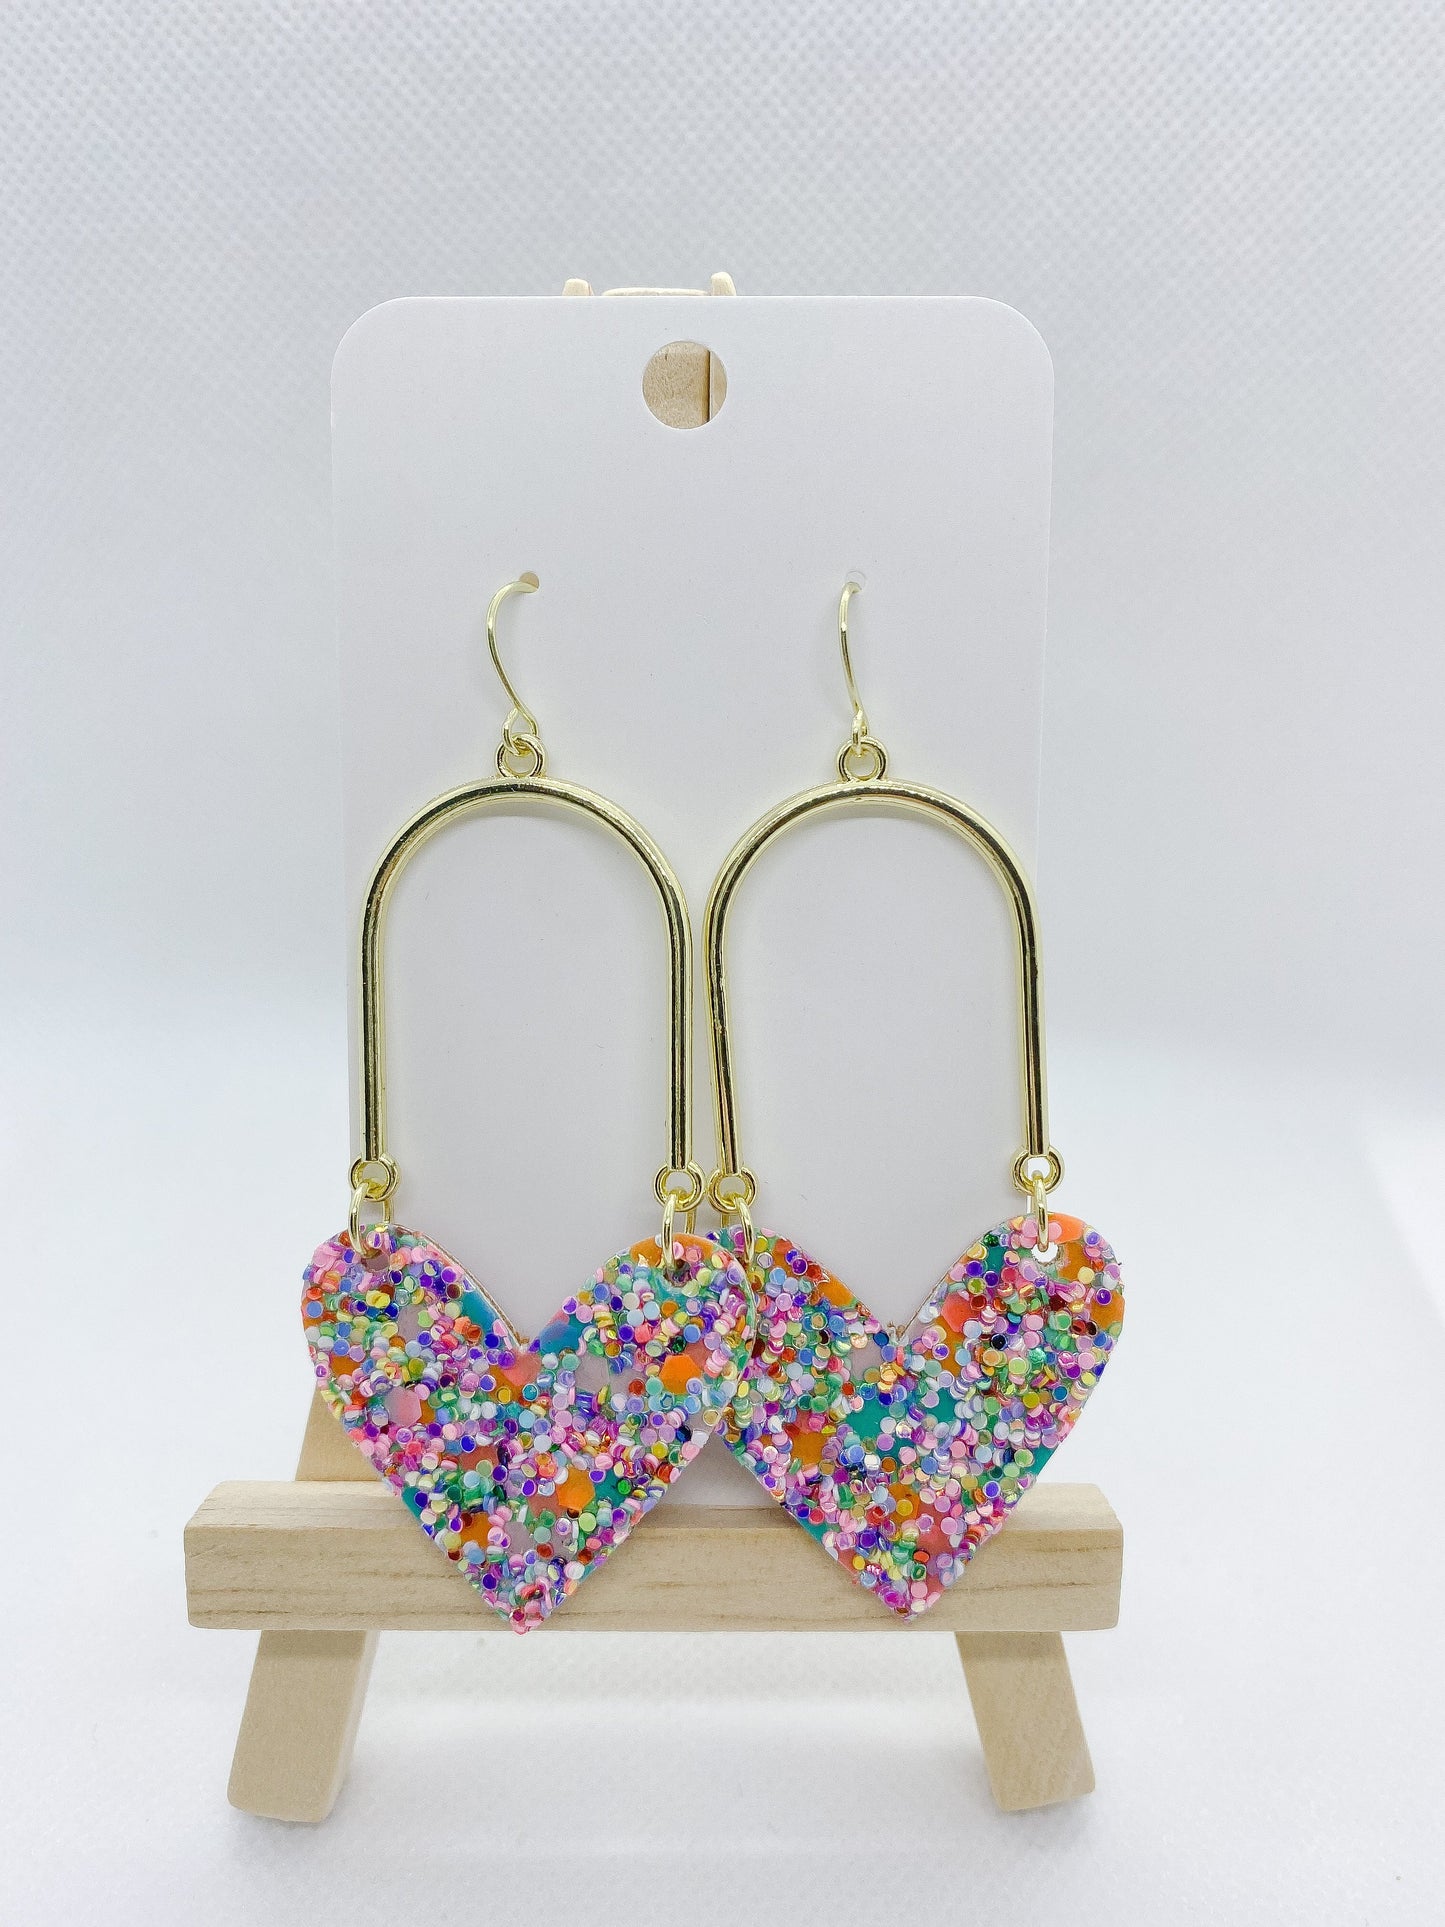 WS Heart Swing Earrings in Confetti Glitter